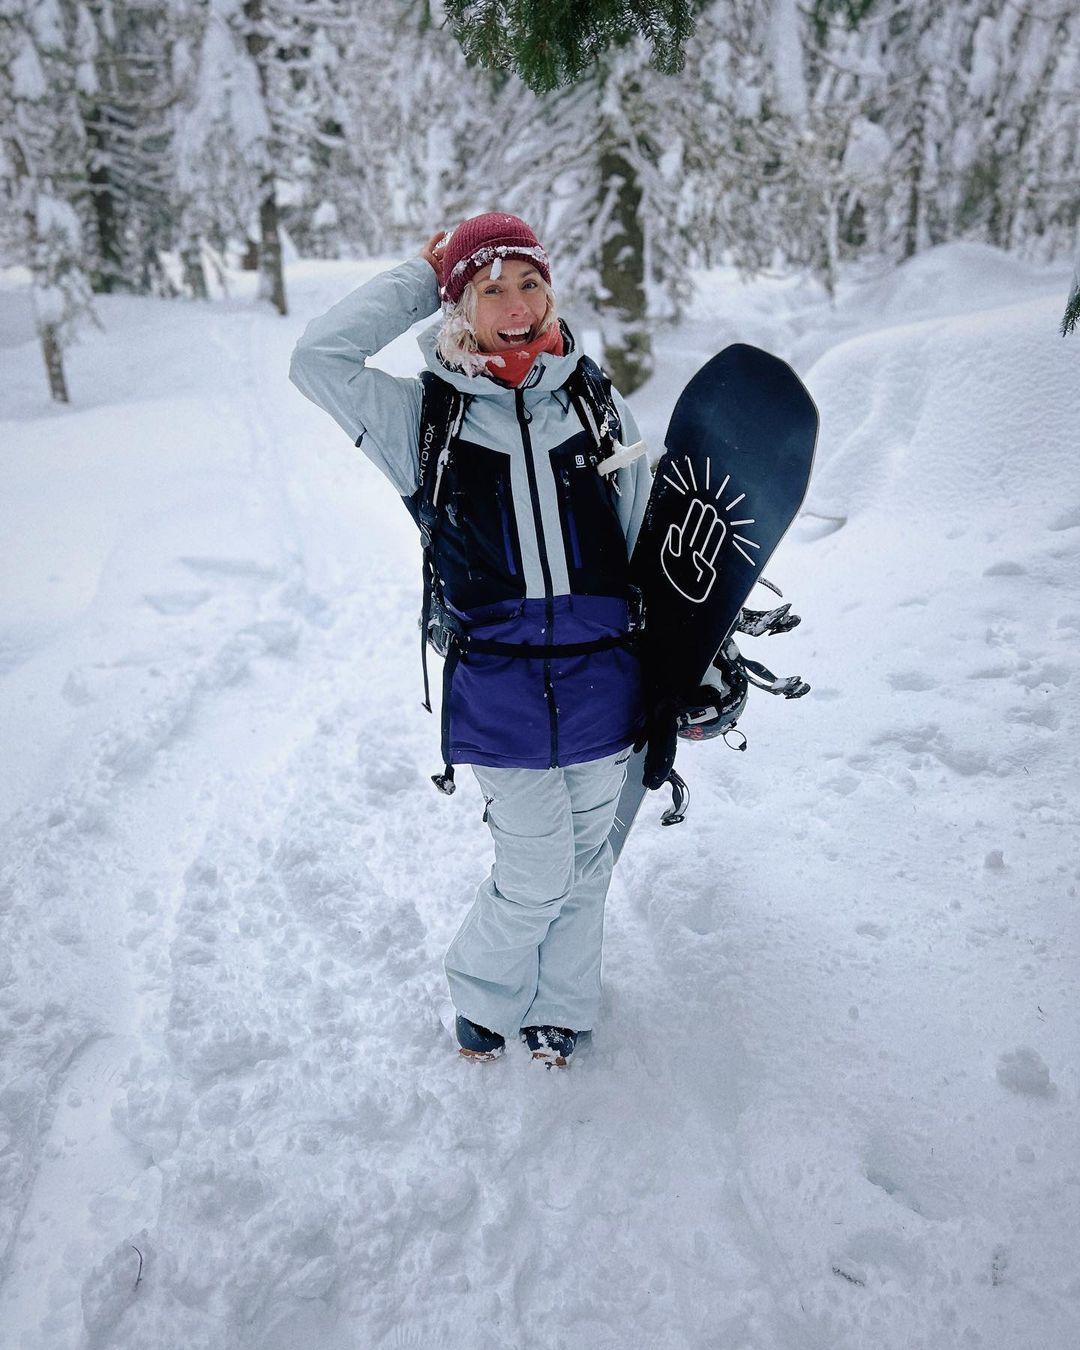 class="content__text"
 Nemám pre vás žiadne gýčové scenérie 🏔️ zato postík plný nefalšovanej radosti a fotky šťastnej matky na snowboarde 💃🏻😂

@jasna_nizke_tatry 
@gopass.travel 
@horsefeathers.eu 

 #jasna #jasnanizketatry #gopass #slovakiatravel #snowboarding 
 